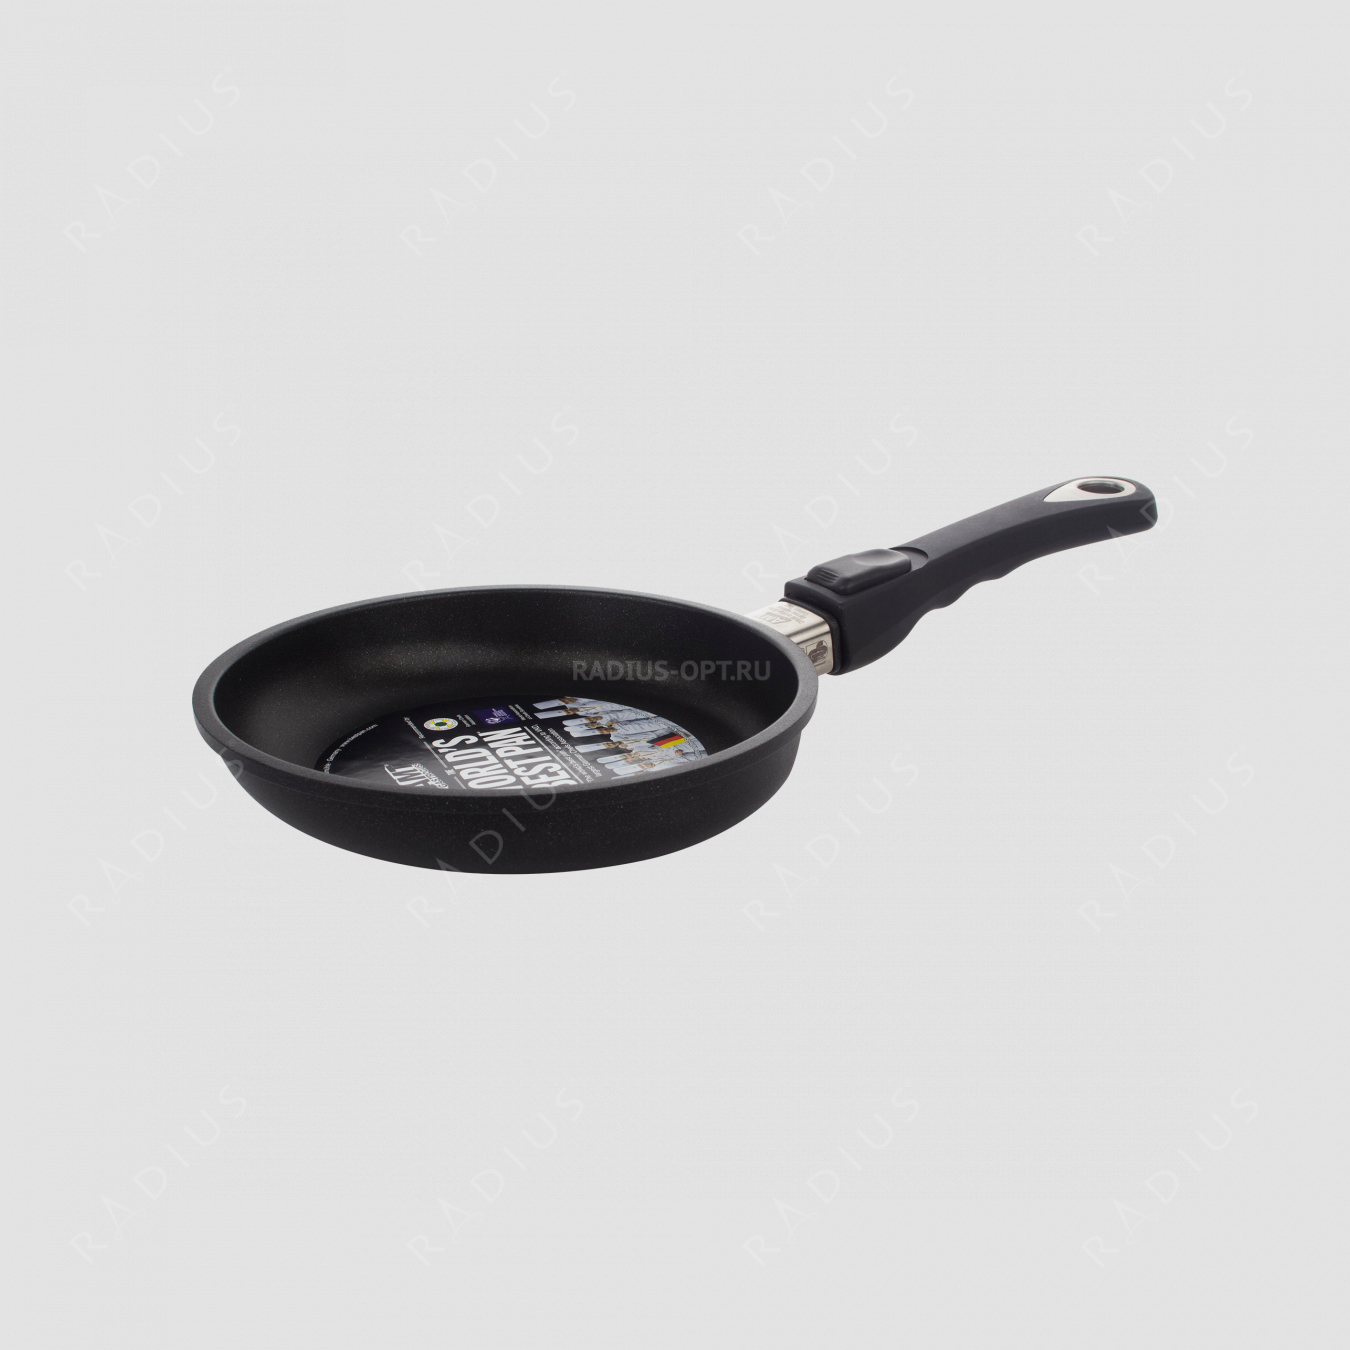 Алюминиевая сковорода с антипригарным покрытием, диаметр 20 см, высота 4 см, съемная ручка, литой алюминий, толщина дна 10 мм, серия Frying Pans, AMT, Германия